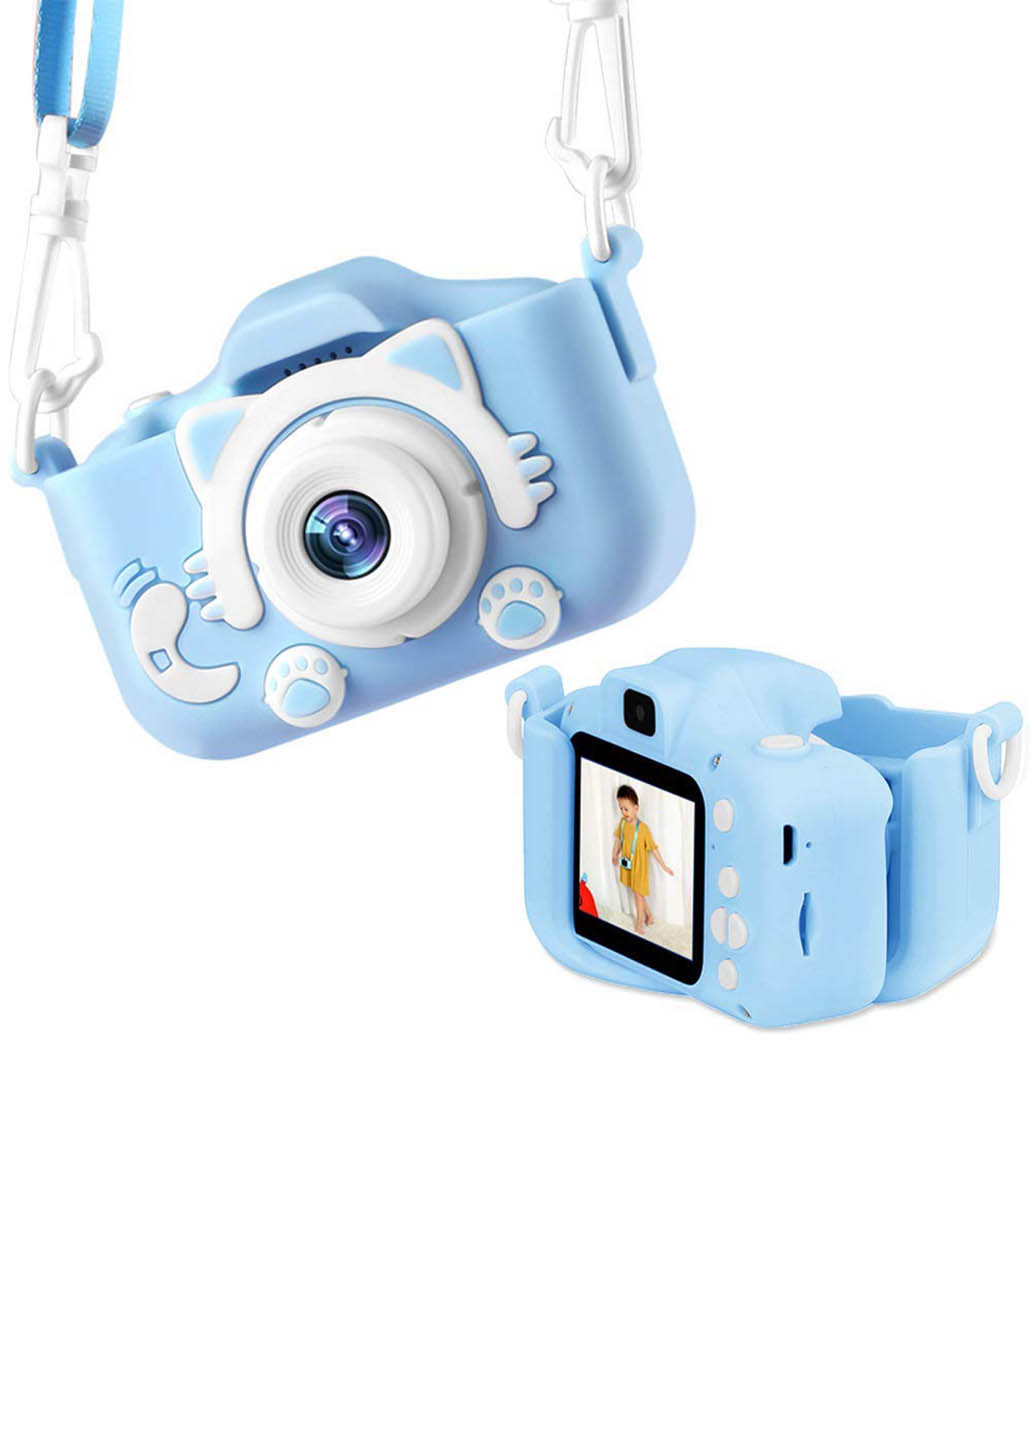 Силіконовий чохол та ремінець для цифрового дитячого фотоапарата KVR-001 блакитний (KVR-001-CS-BL) XoKo силиконовый чехол и ремешок для цифрового детского фотоаппарата xoko kvr-001 голубой (kvr-001-cs-bl) (286304923)